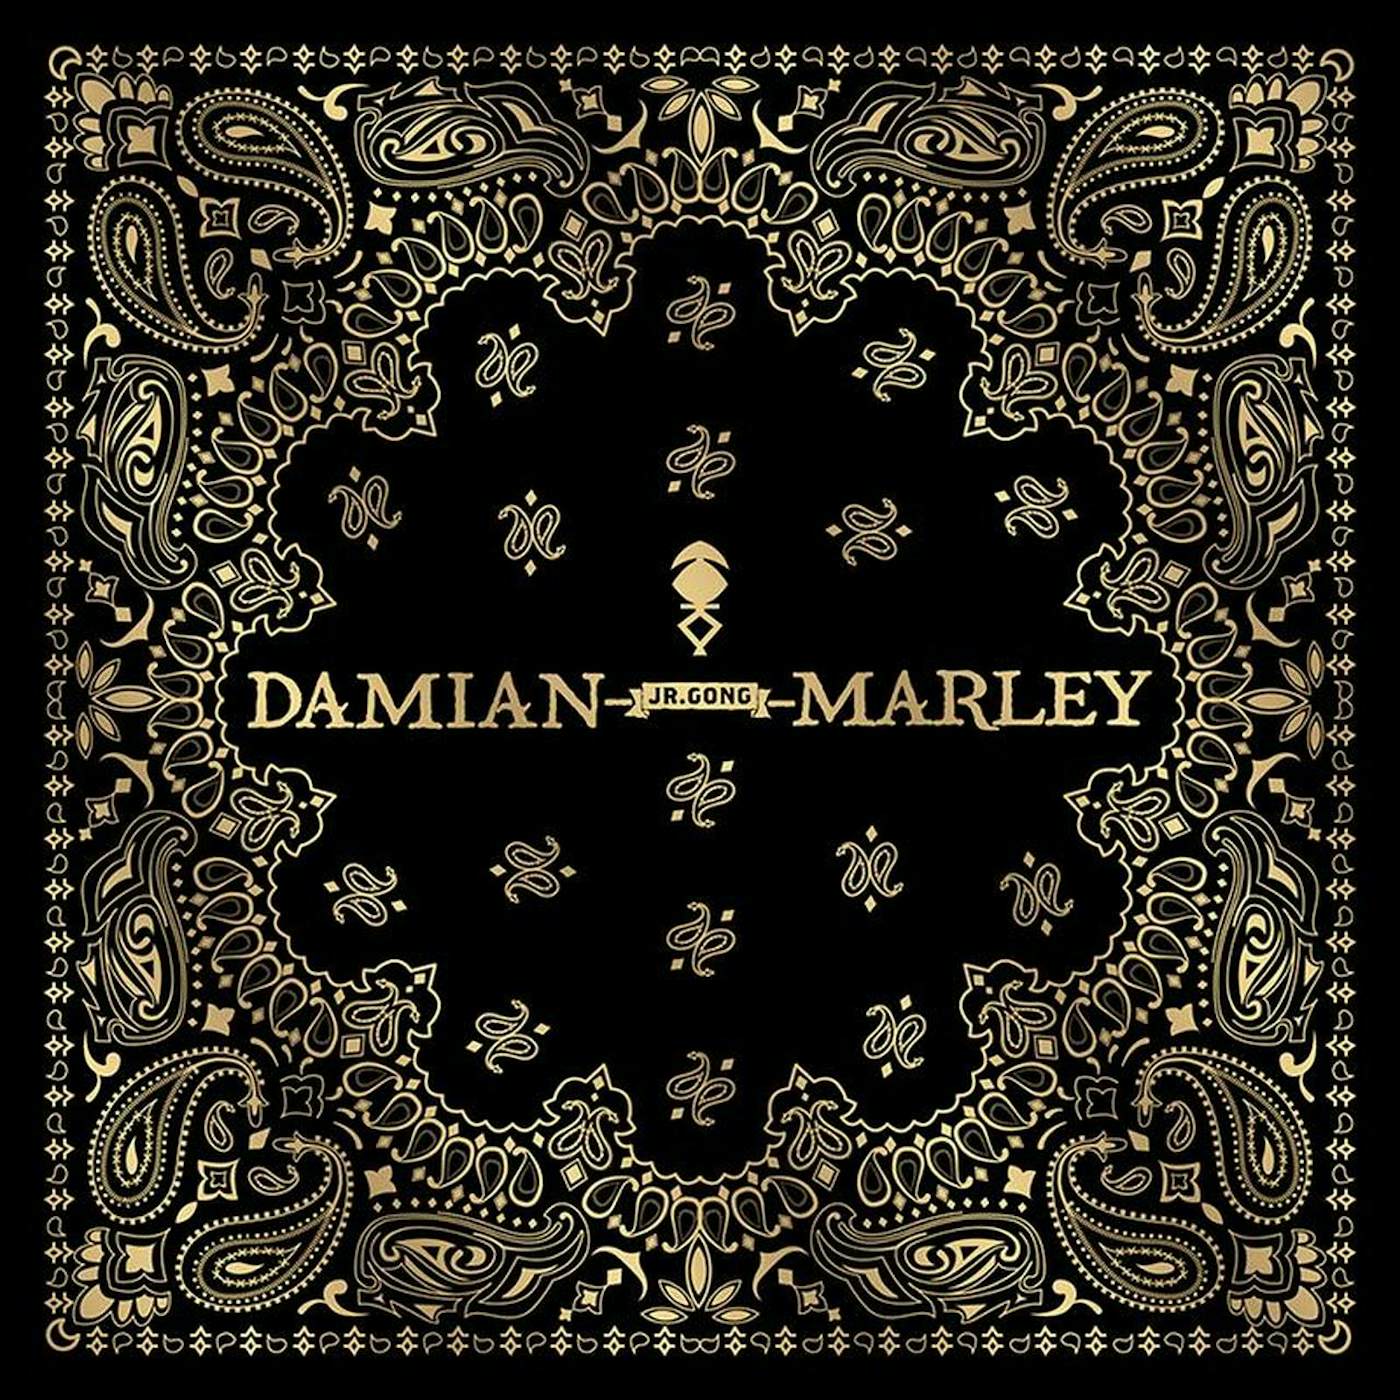 Damian Marley "Stony Hill" Tour Bandana